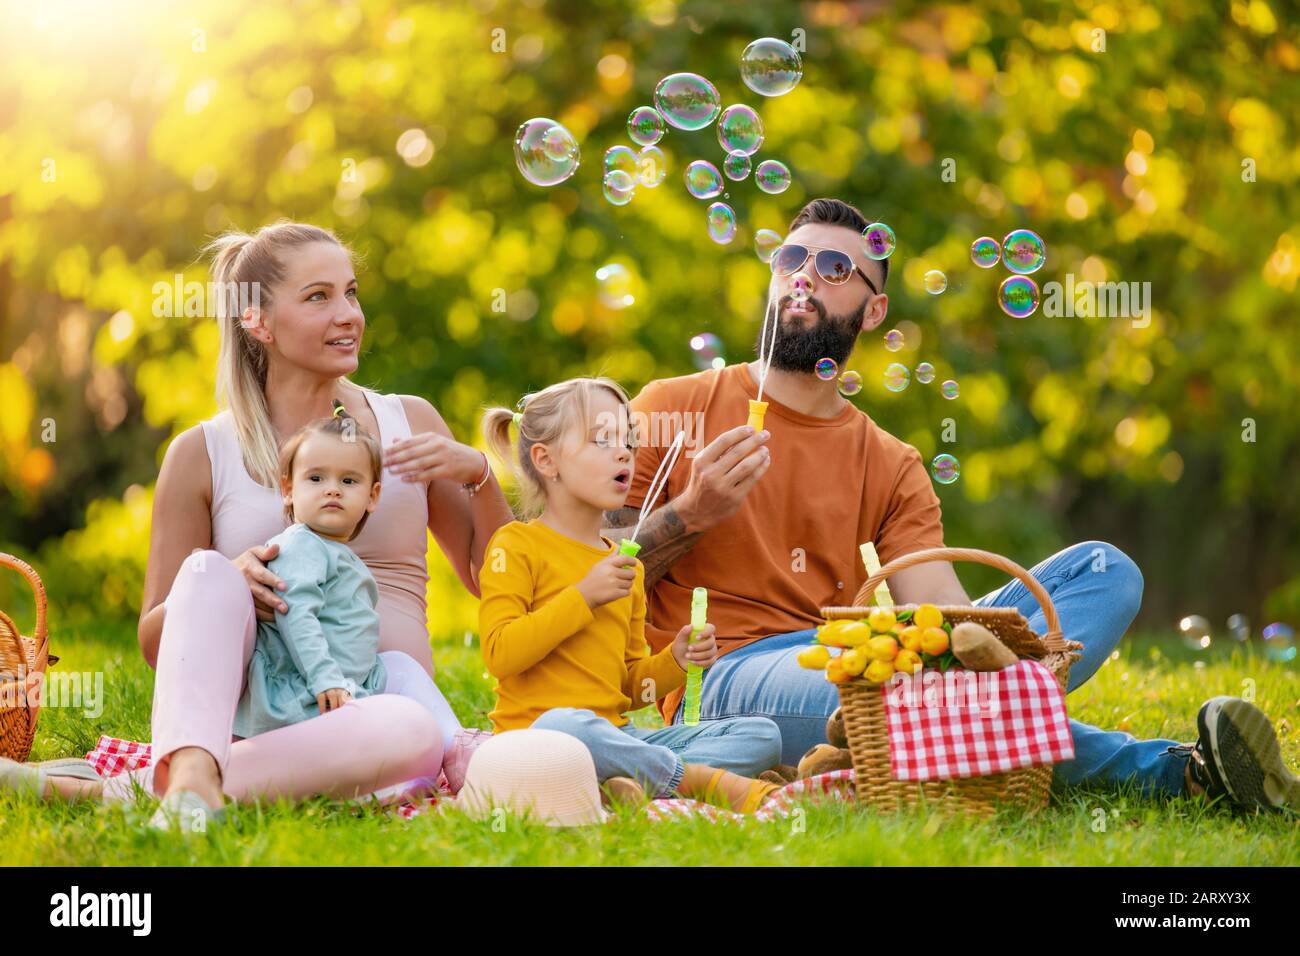 Glückliche Familie, die an einem Sommertag im Park Picknick macht.Glücks-, Familien- und Urlaubskonzept. Stockfoto